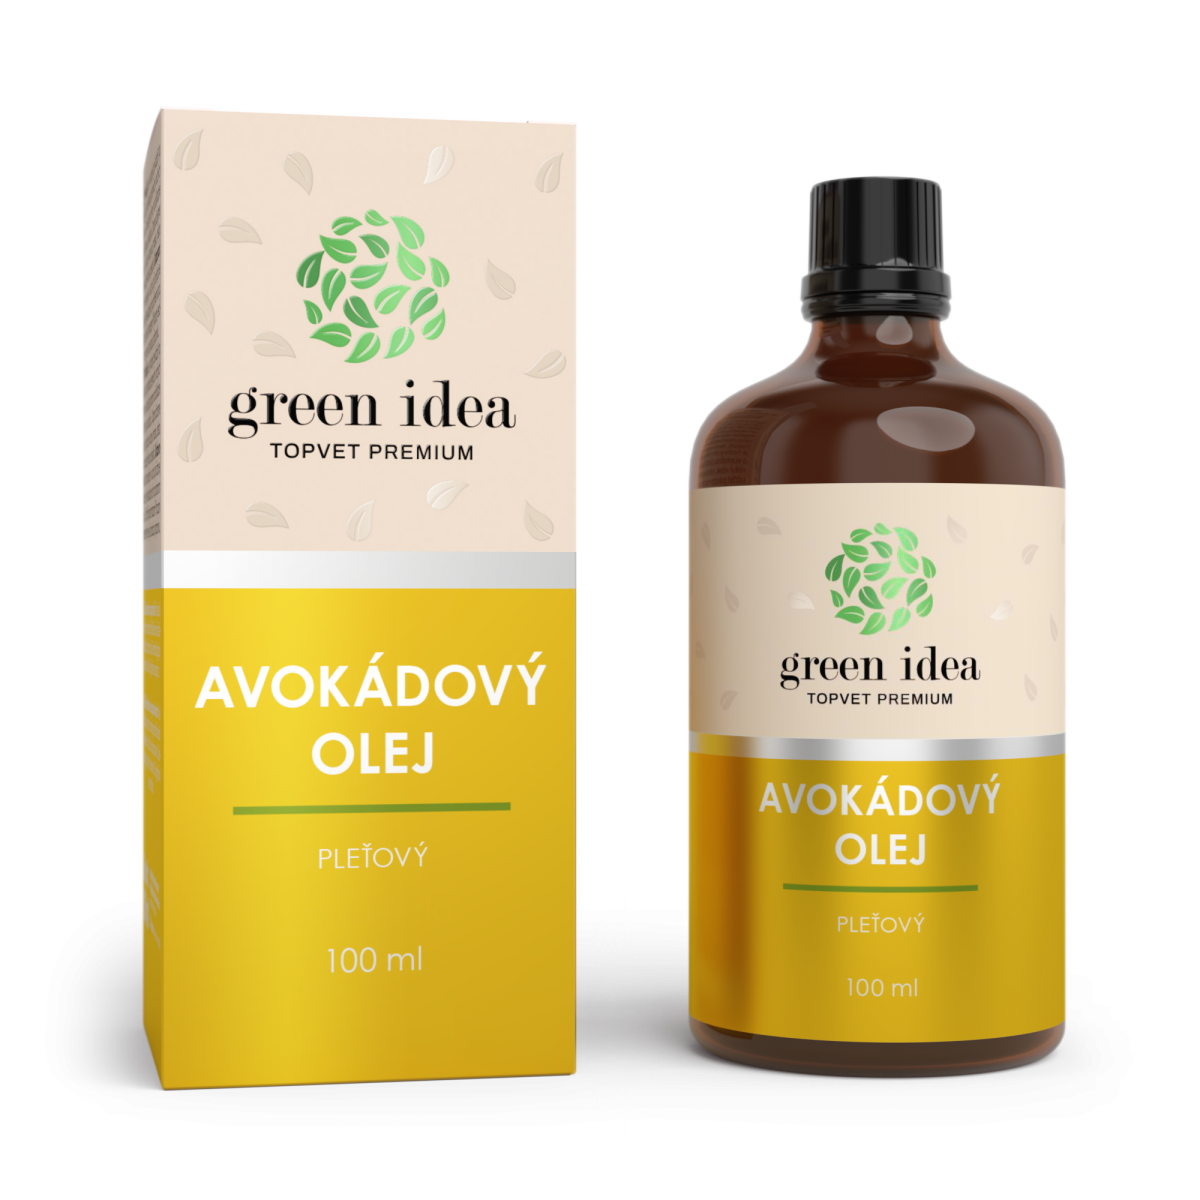 Avocado skin oil